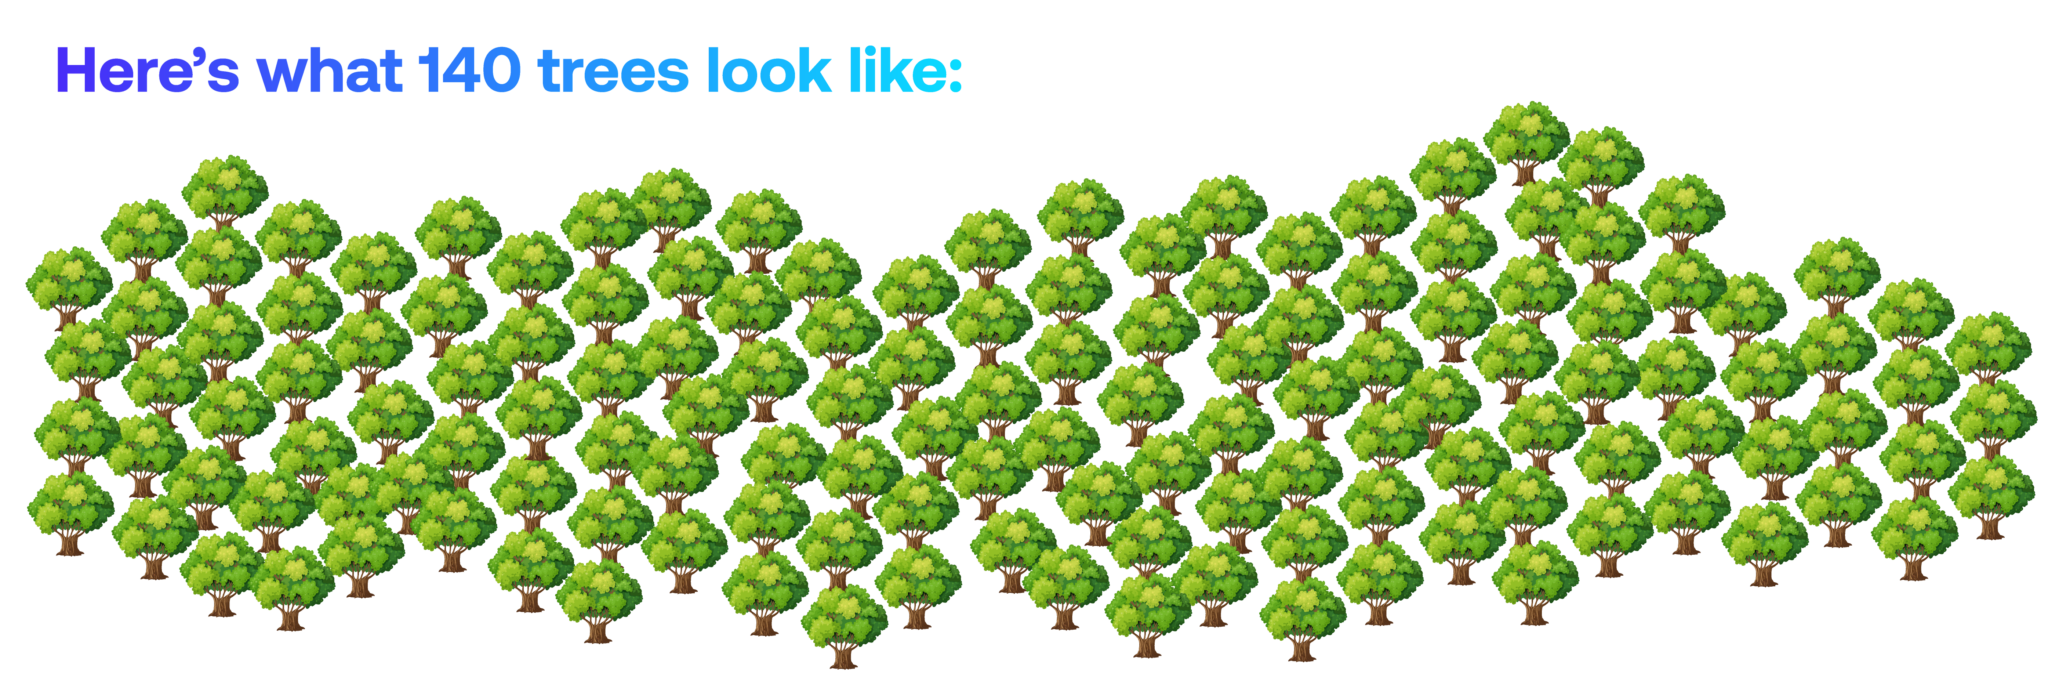 140 trees visualised 06